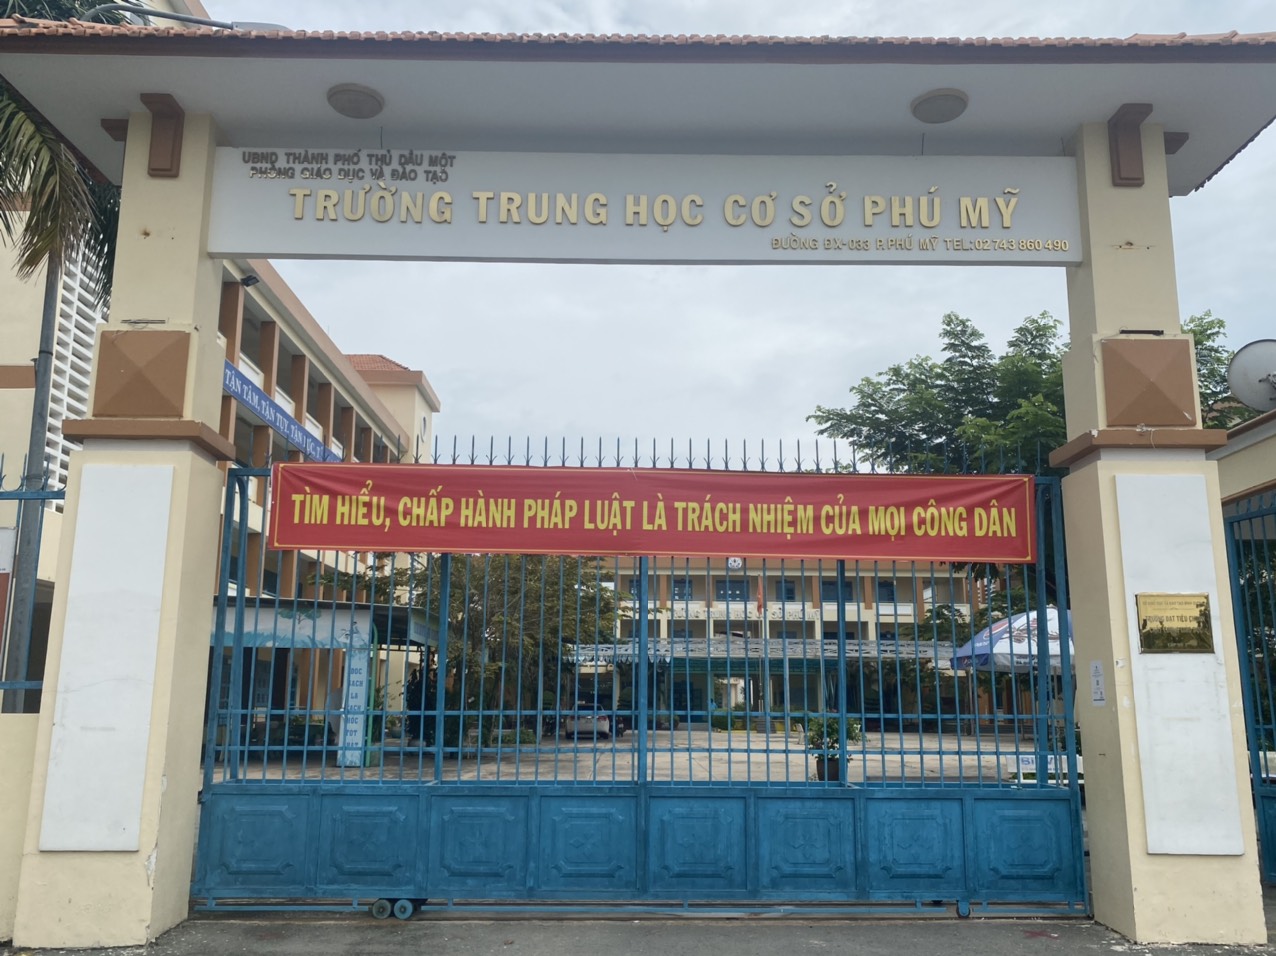  Bài tuyên truyền ngày pháp luật Việt Nam